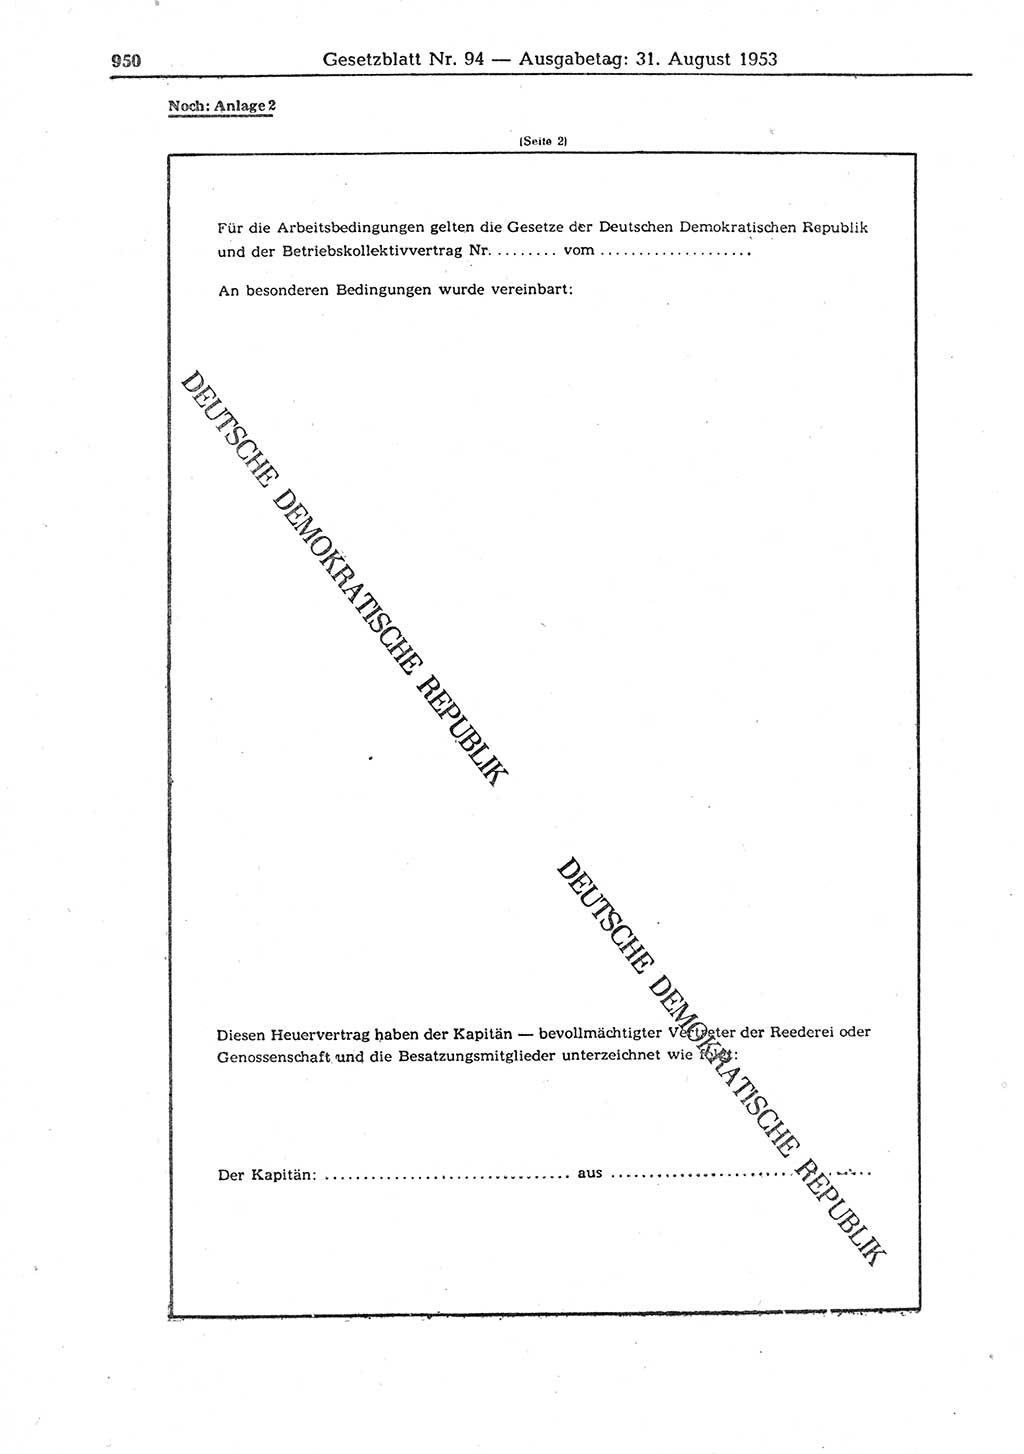 Gesetzblatt (GBl.) der Deutschen Demokratischen Republik (DDR) 1953, Seite 950 (GBl. DDR 1953, S. 950)